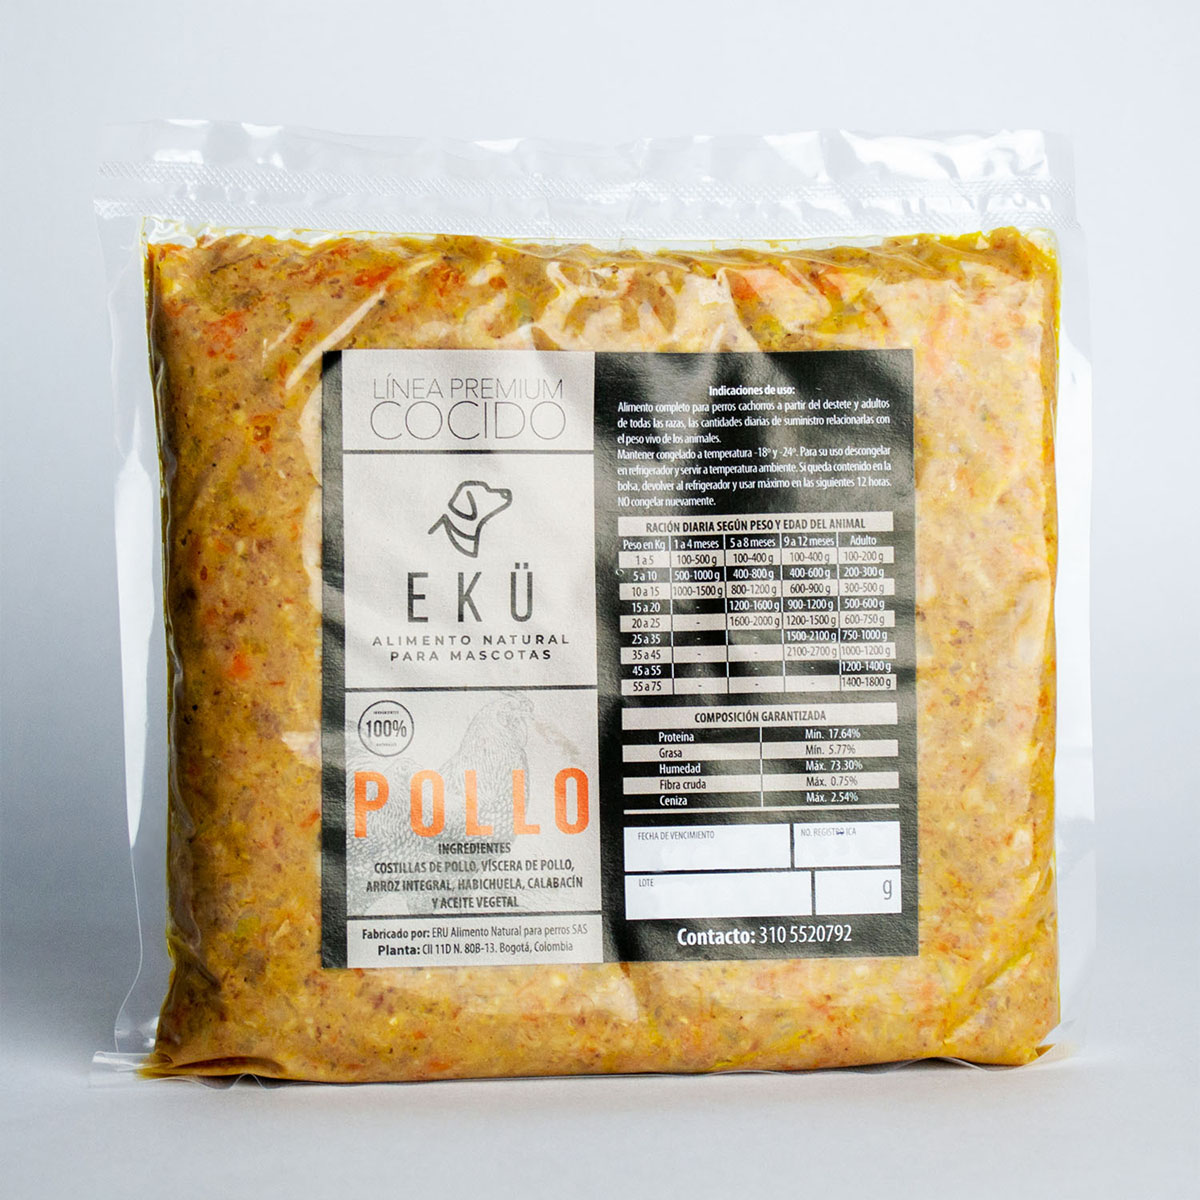 EKÜ Cocido de Pollo – Eku